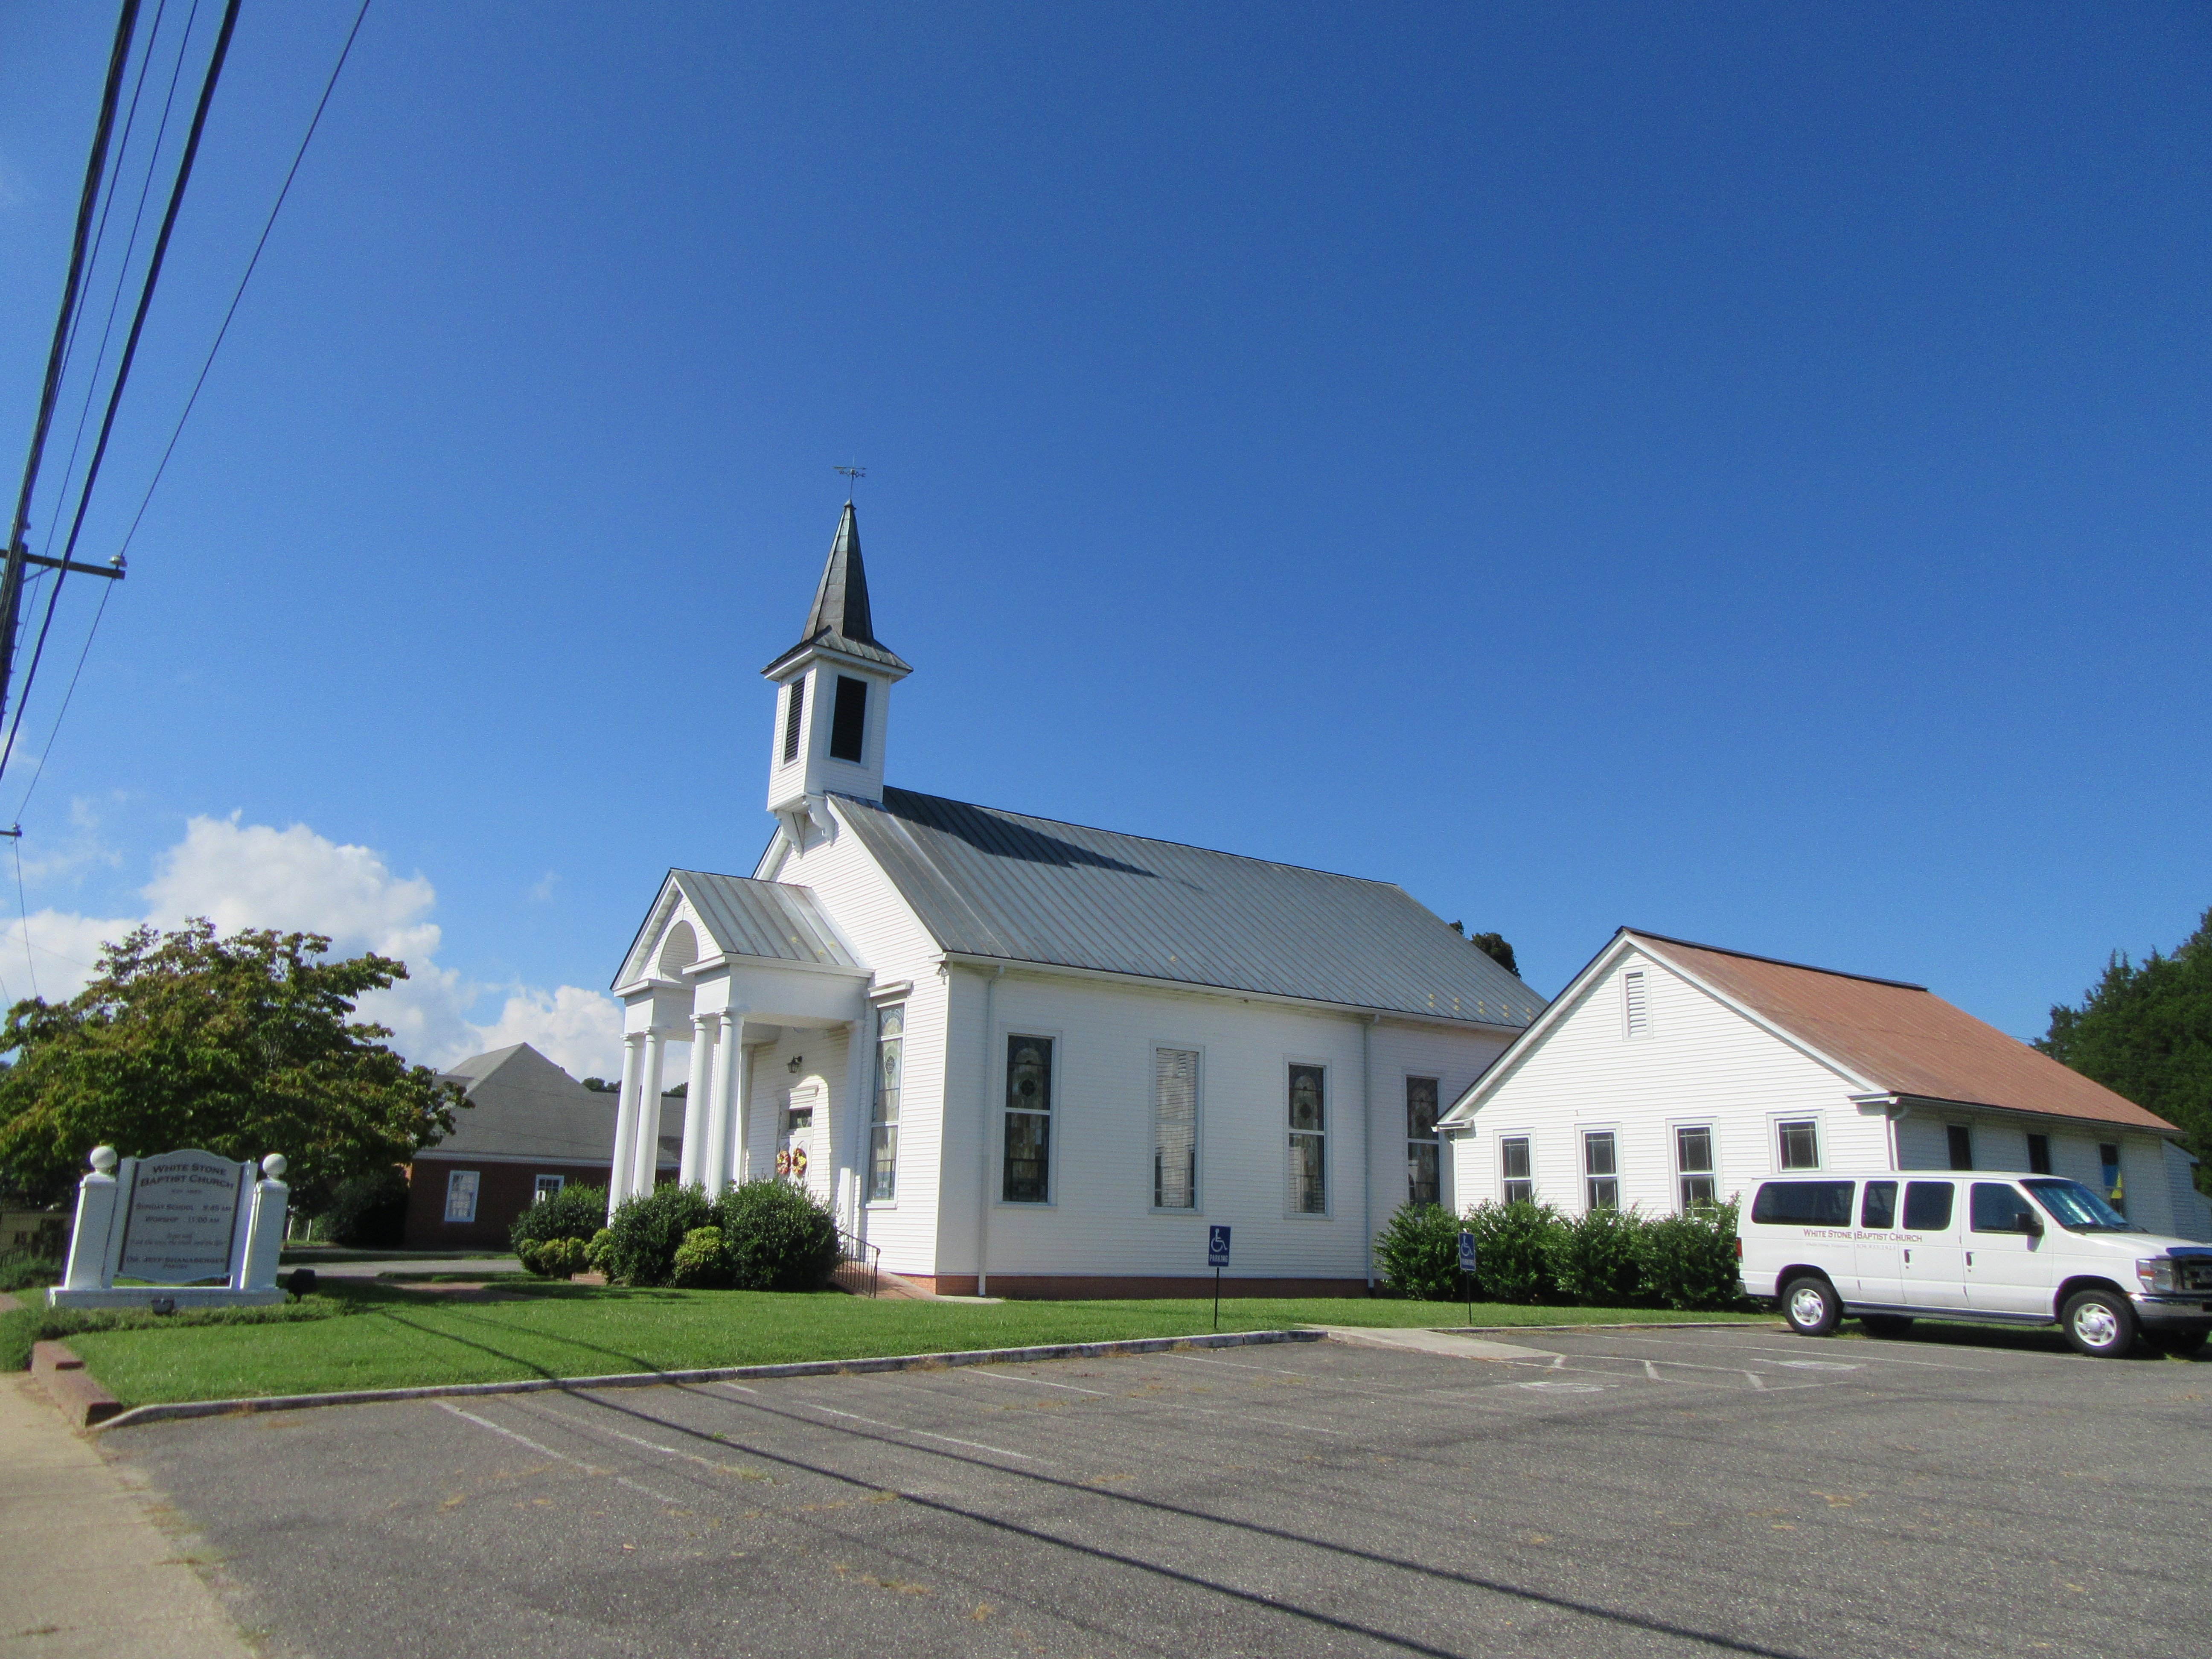 White Stone Baptist Church